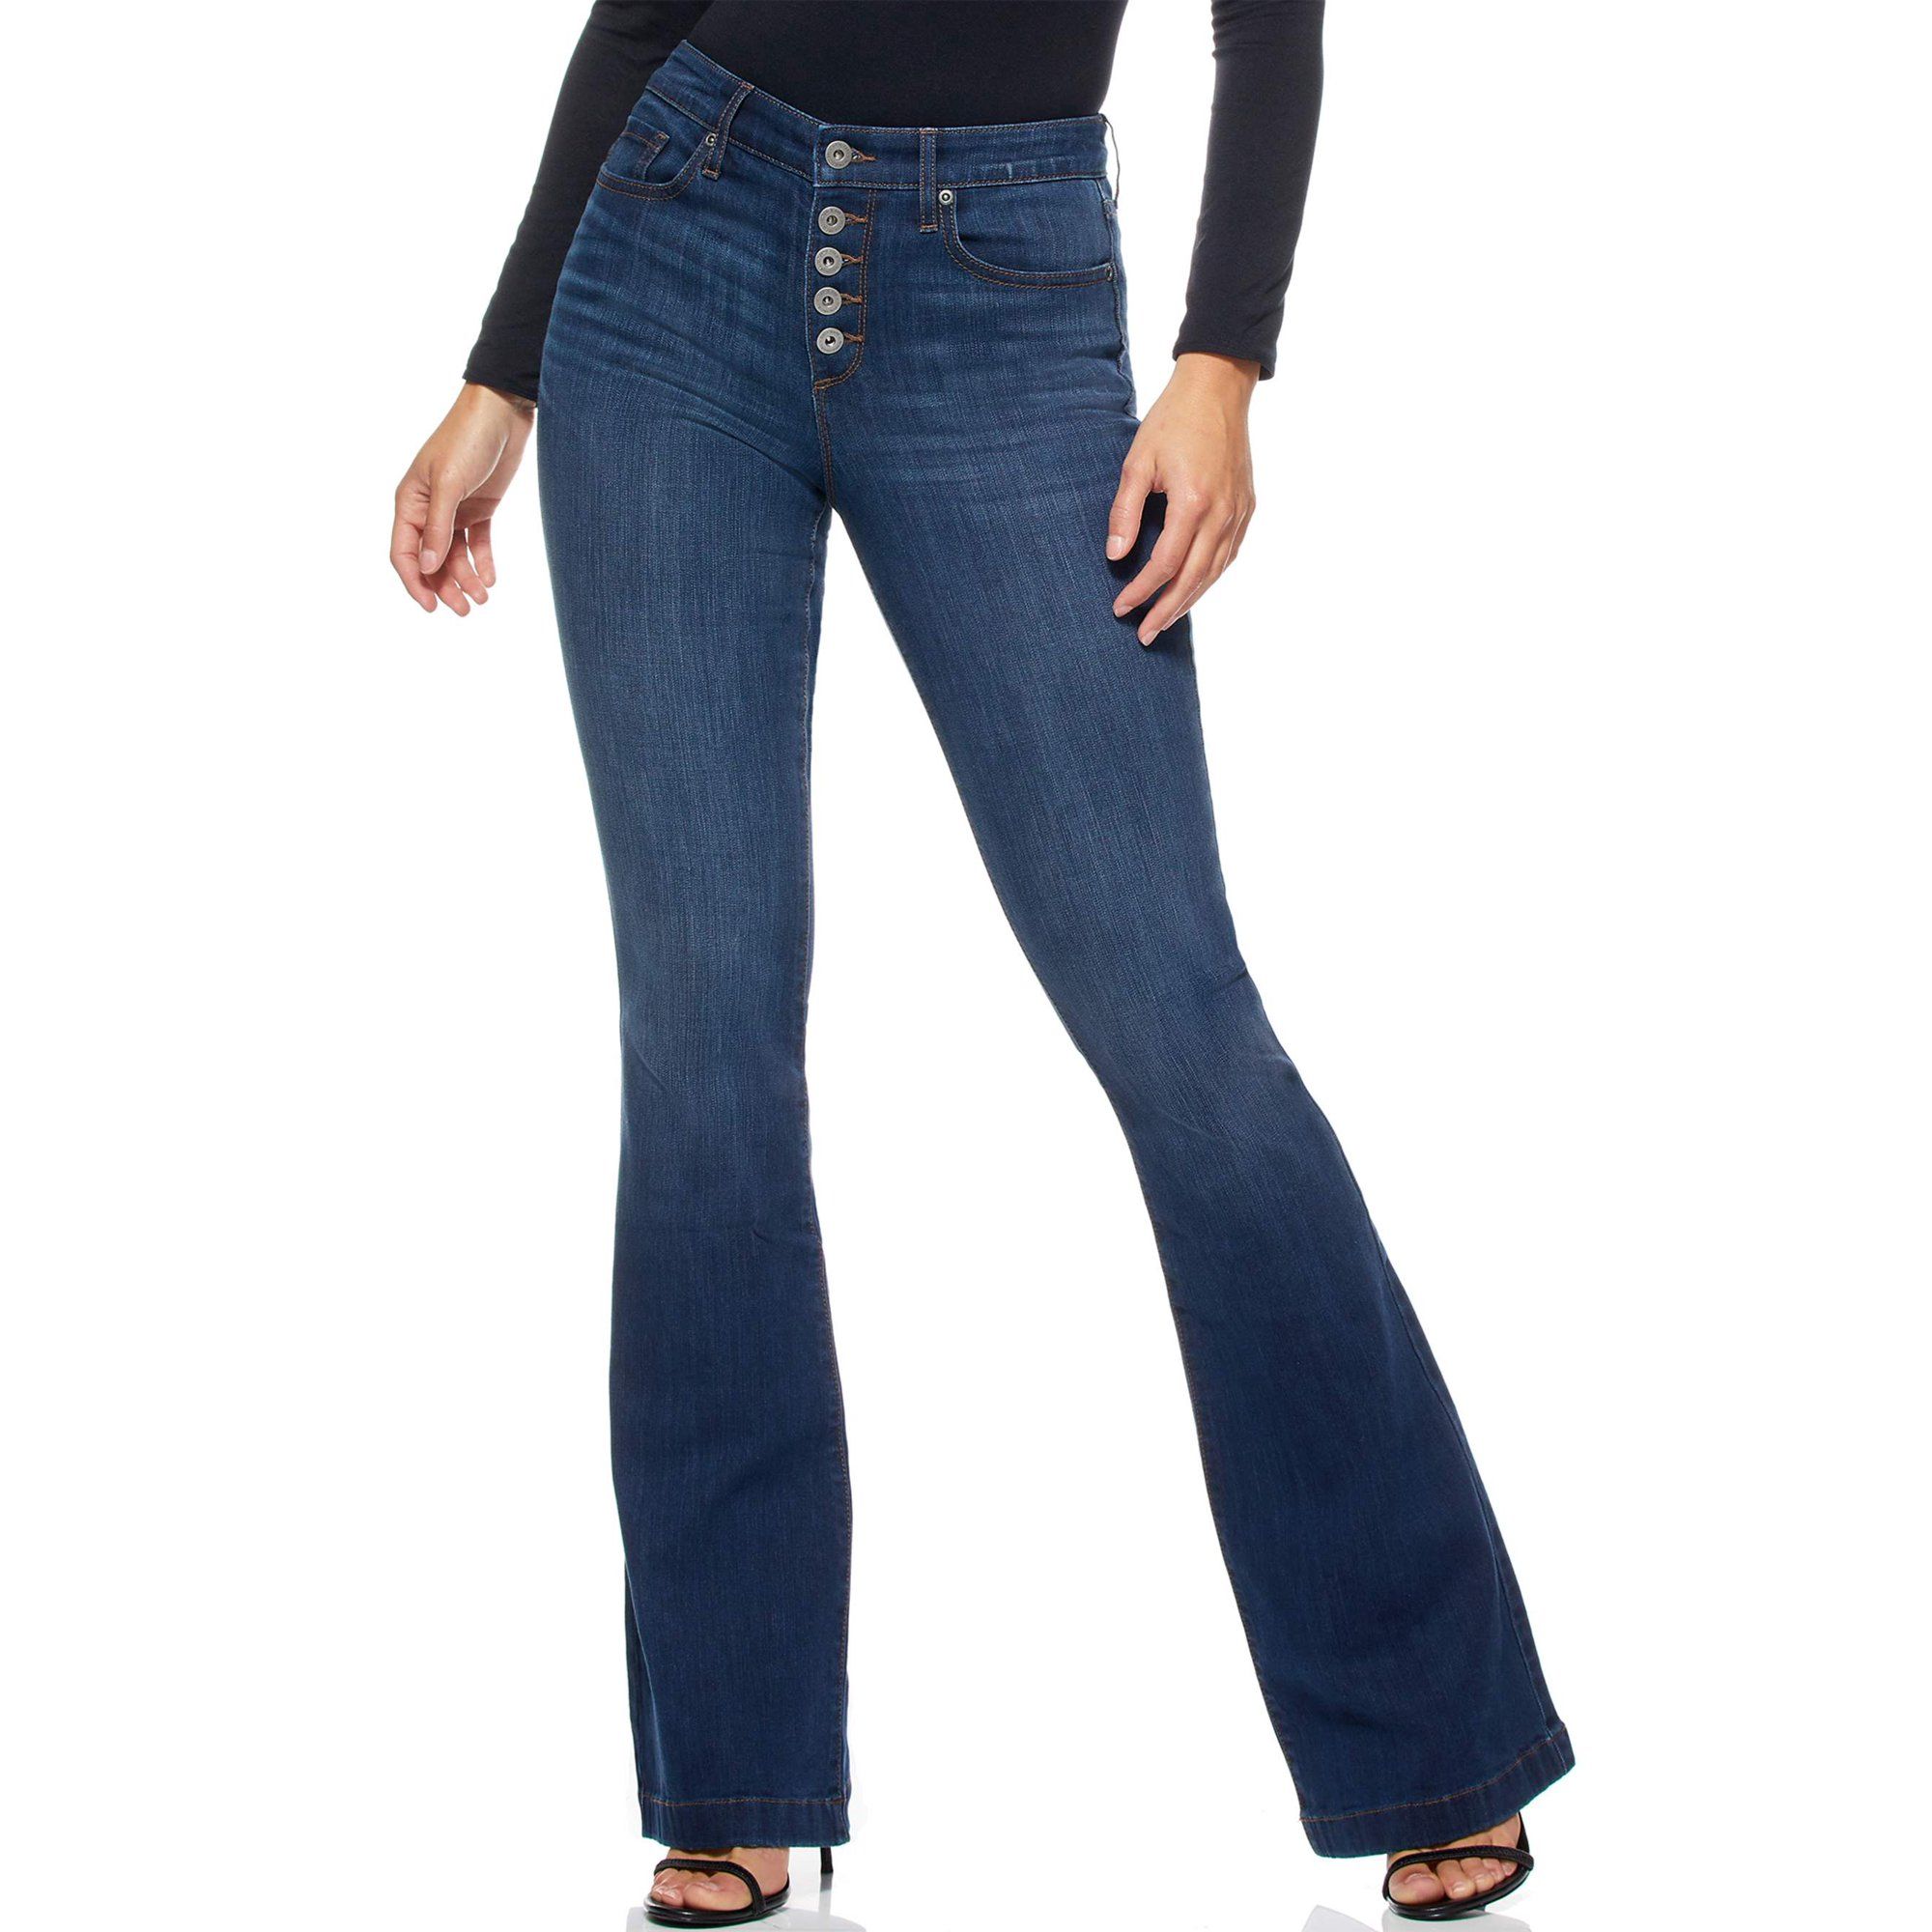 Sofia Jeans by Sofia Vergara Women's Melisa High Waist Flare Jeans | Walmart (US)